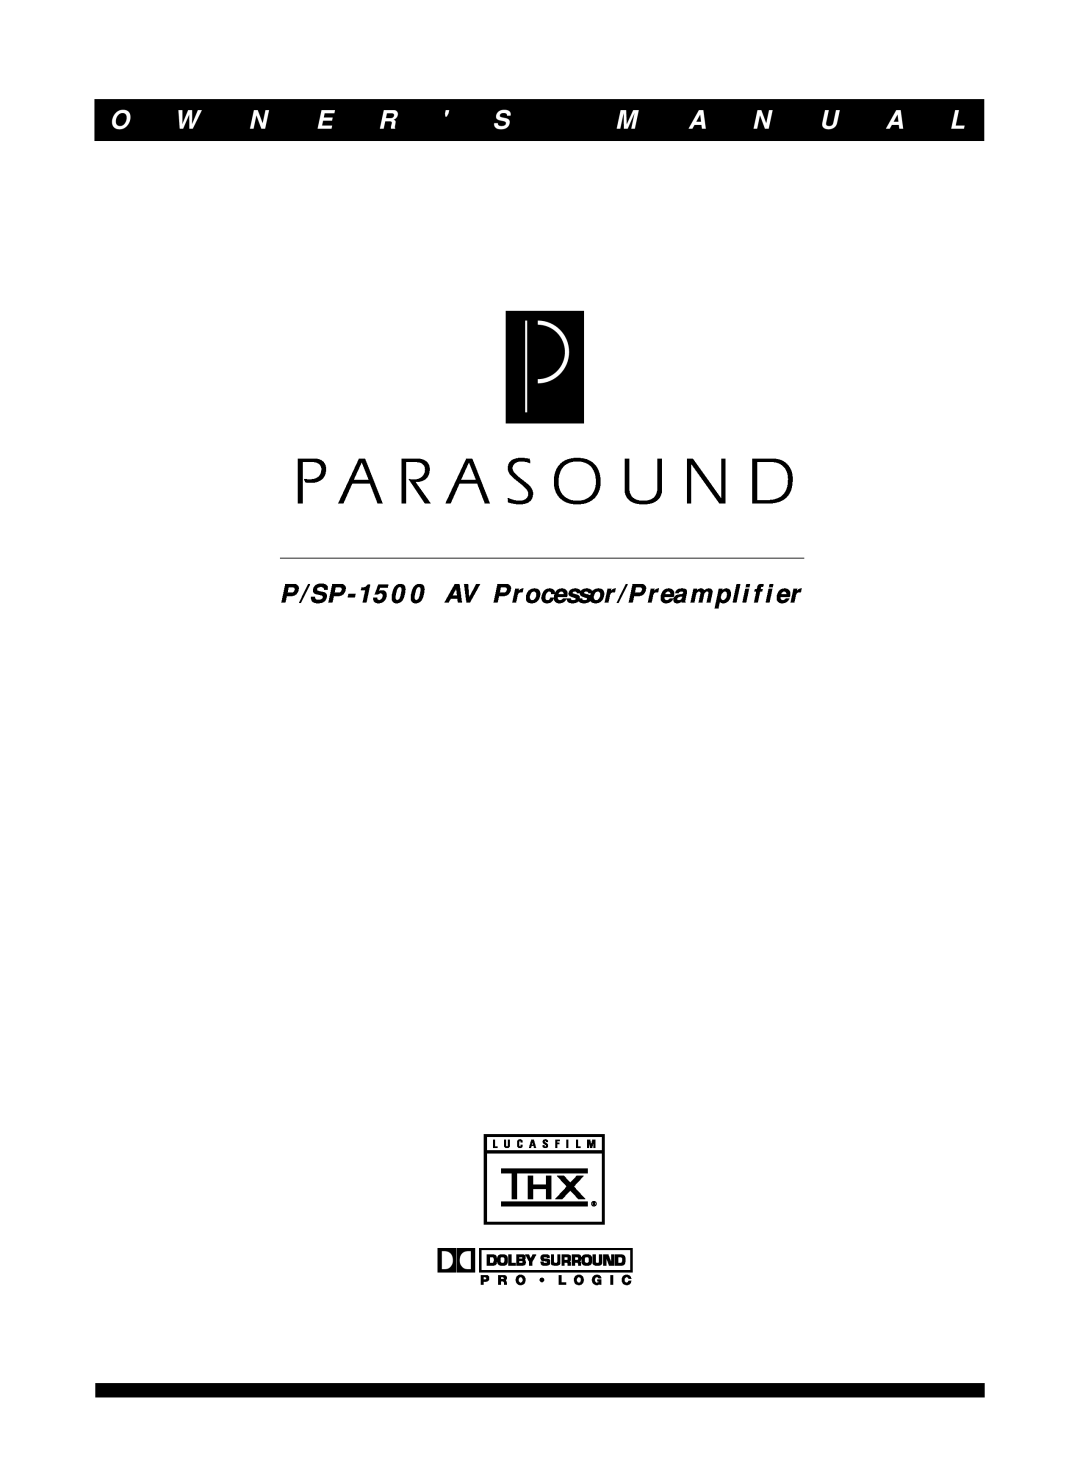 Parasound owner manual O W N E R S, M A N U A L, P/SP-1500AV Processor/Preamplifier 